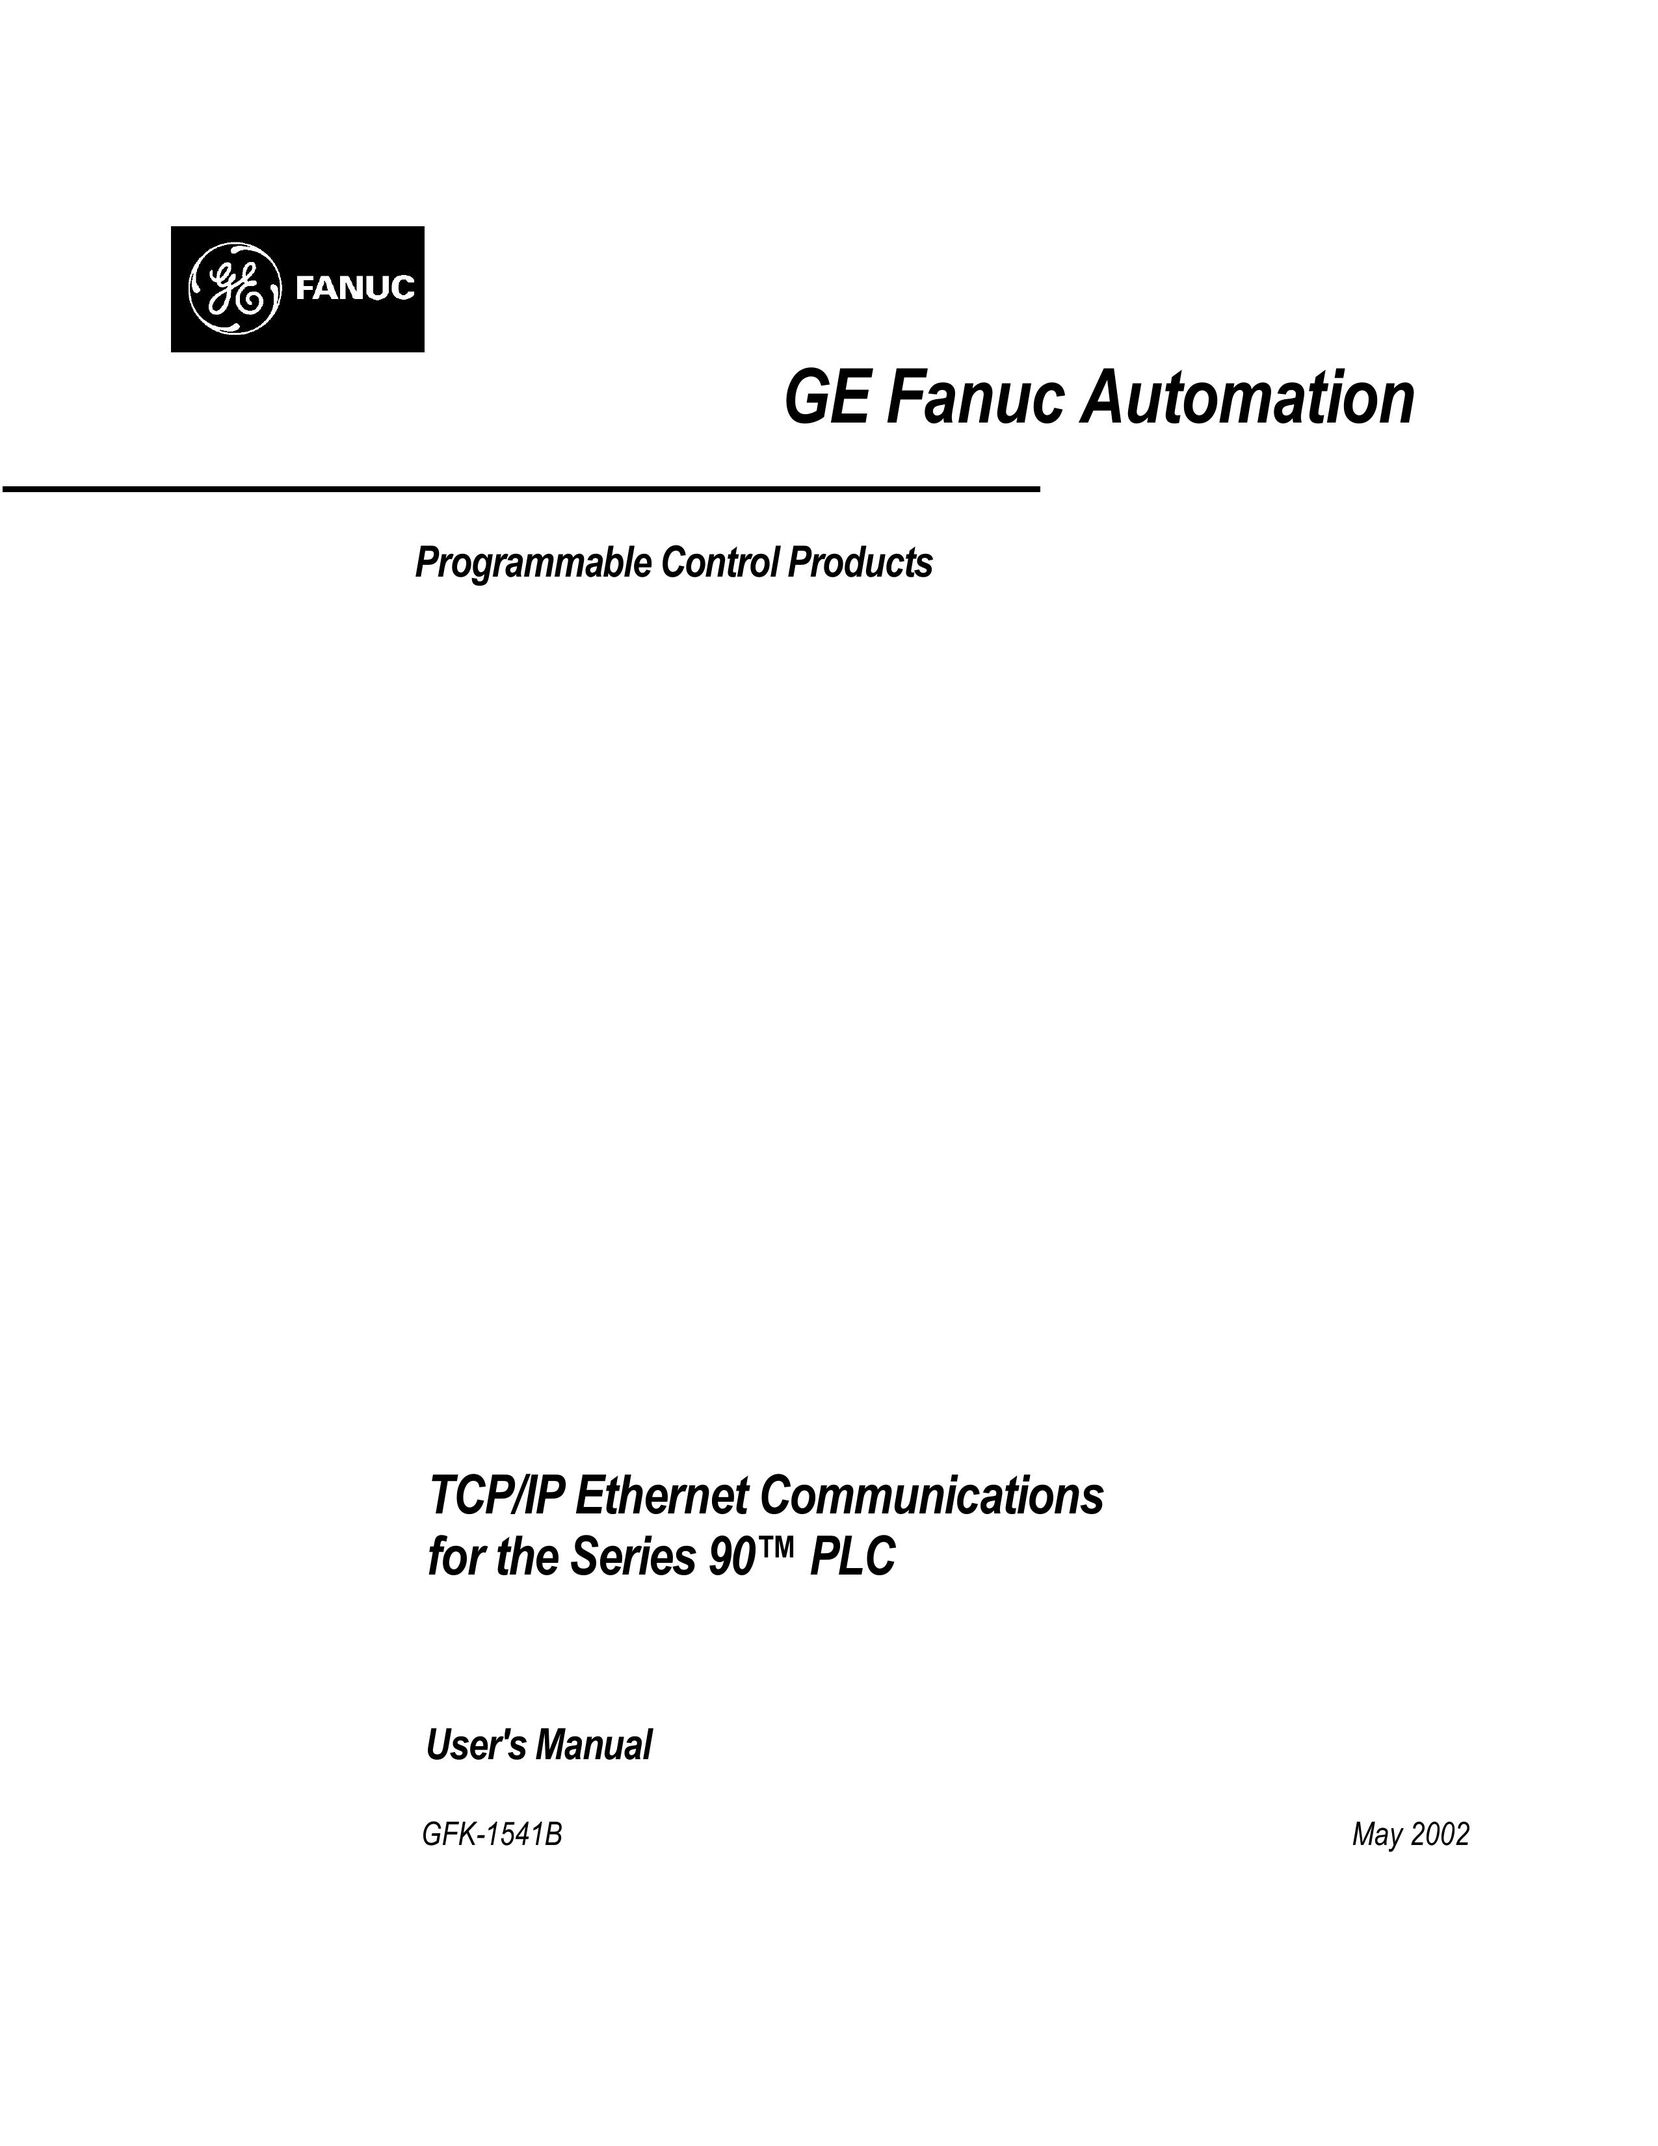 GE GFK-1541B Network Card User Manual